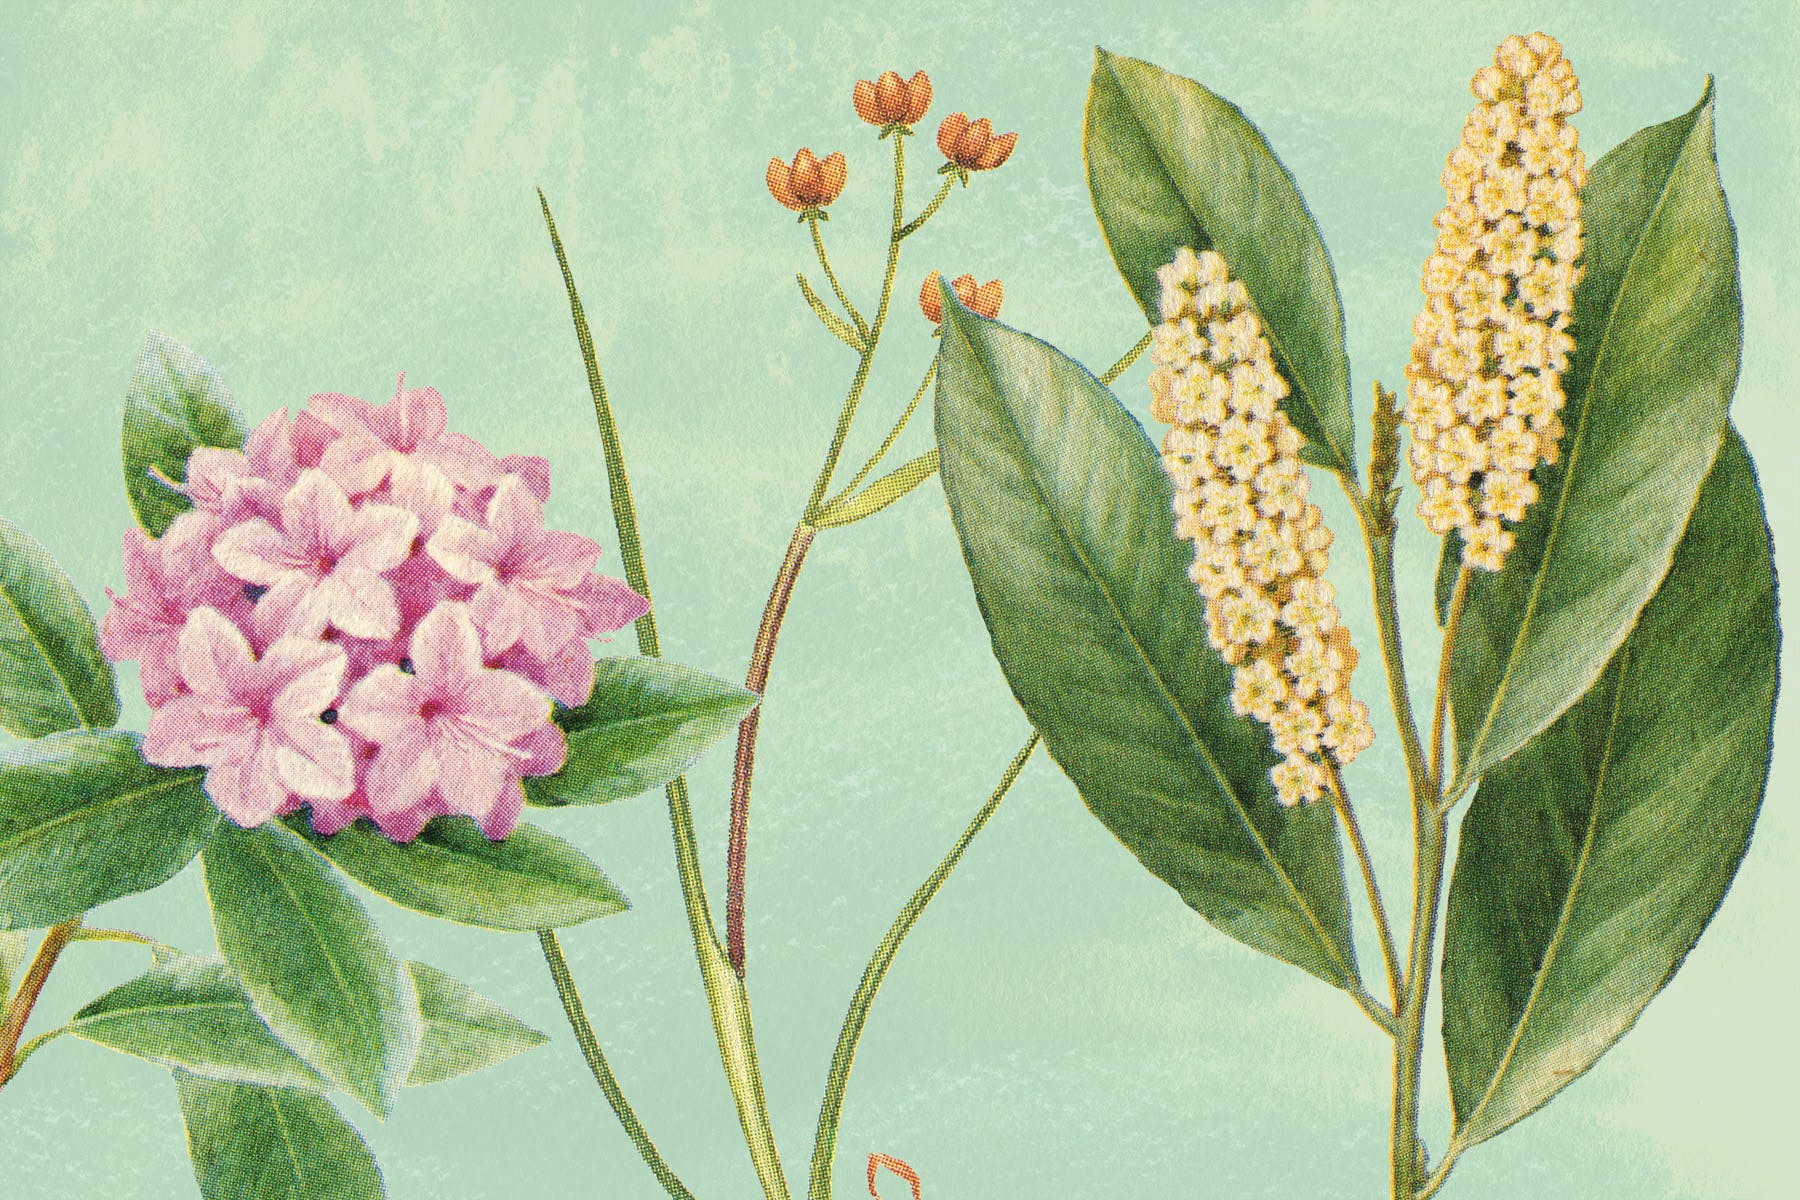 古董书籍植物手绘插画图案设计素材v3 Vintage Botanical Illustrations Vol.3插图(1)